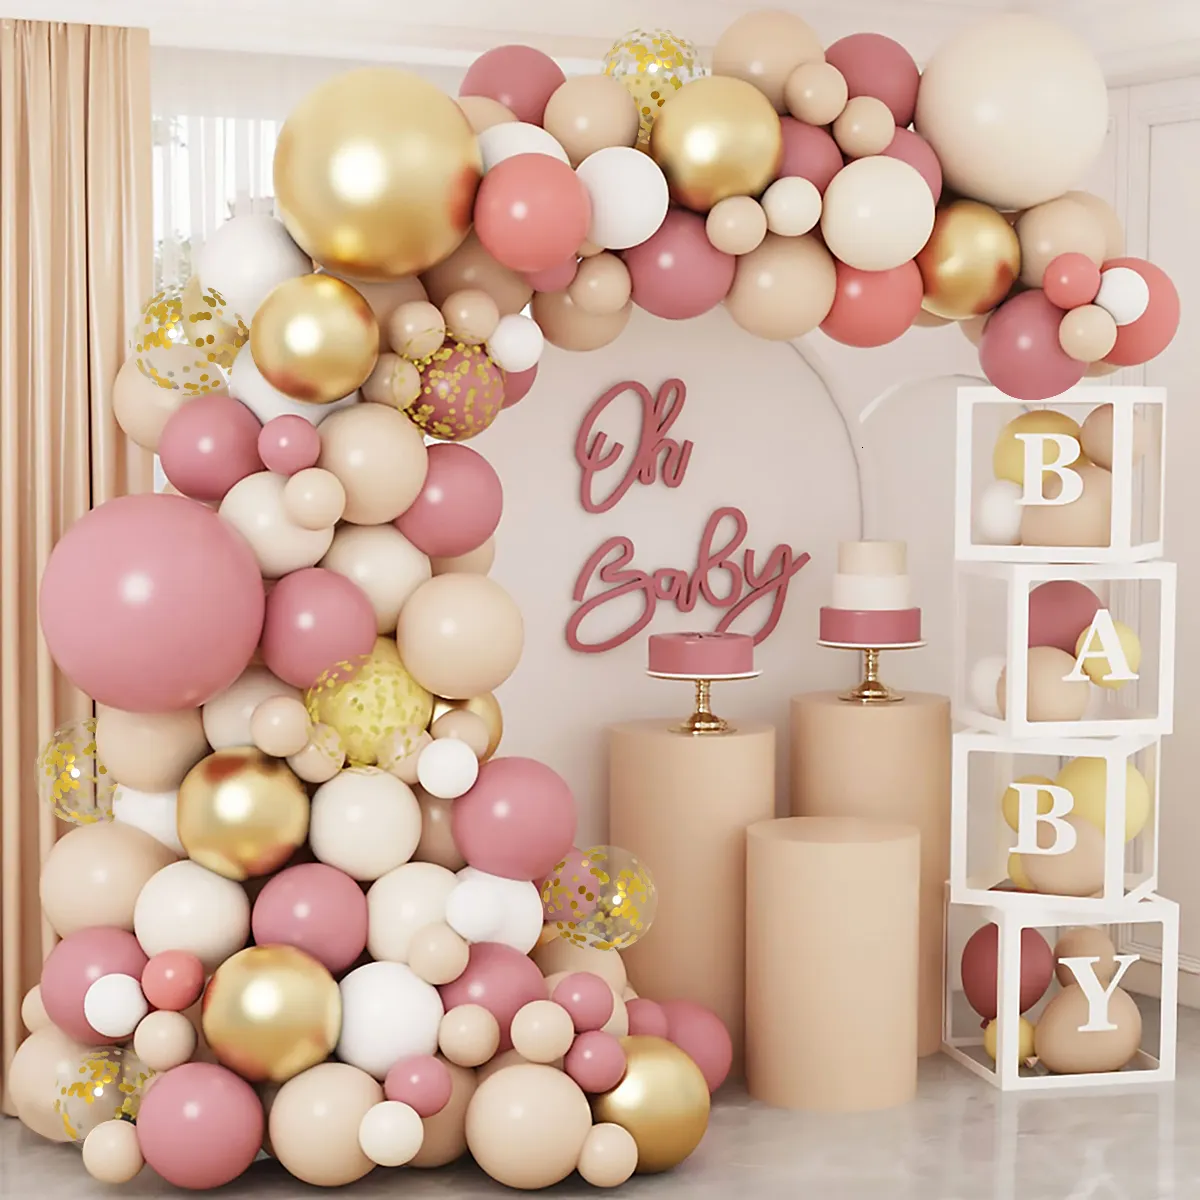 Andere Event -Party -Lieferungen Rose Gold Pink Ballon Garland Erz Kit Hochzeit Geburtstagsdekor Babyparty Girl Dekoration Latex Ballons 230812